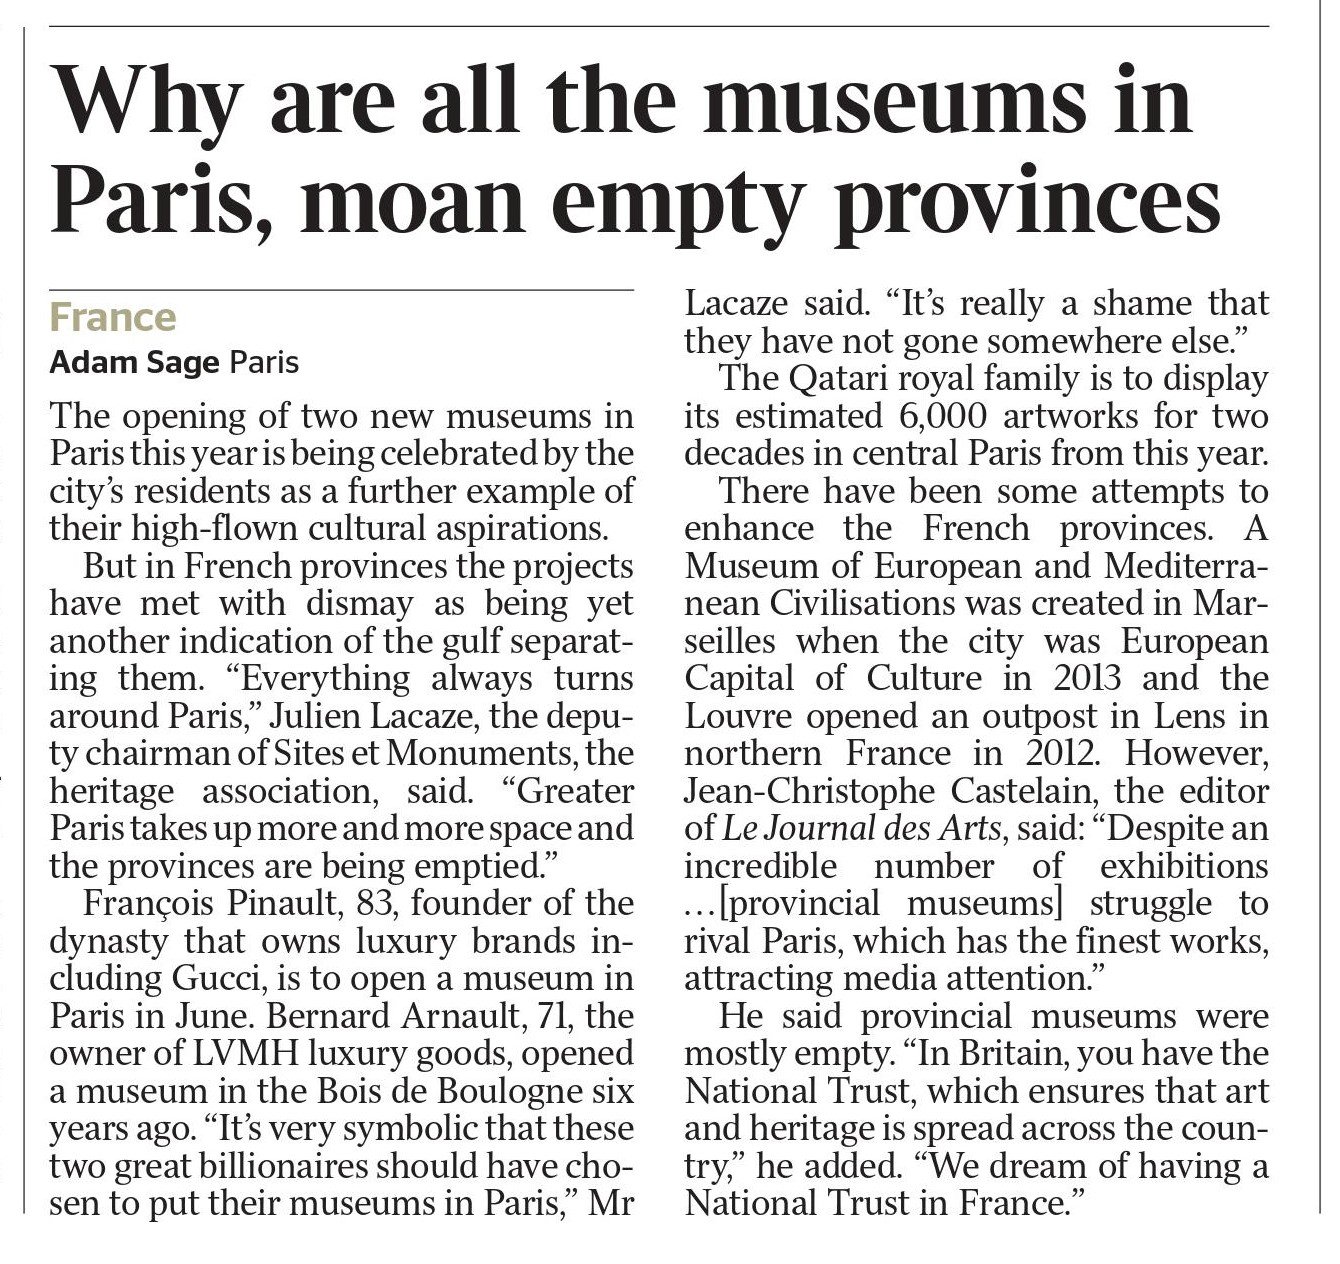 The Times, 15 février 2020, p. 44 - National Trust à la française (extrait)